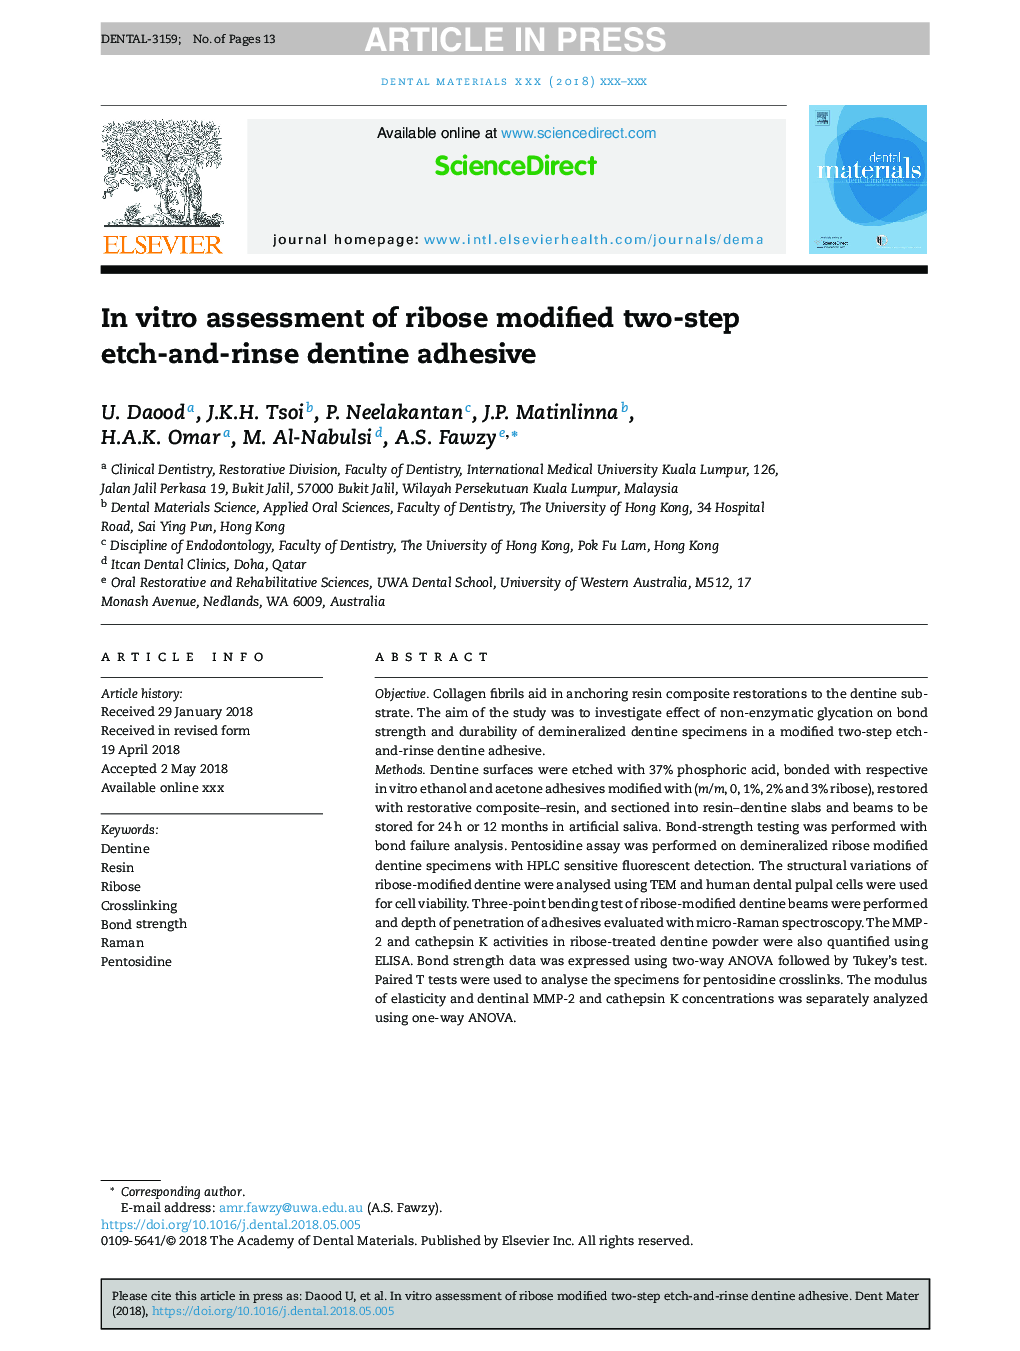 بررسی انعطاف پذیری چسبناک دنتین دو مرحله ای اصلاح شده ریبوز 